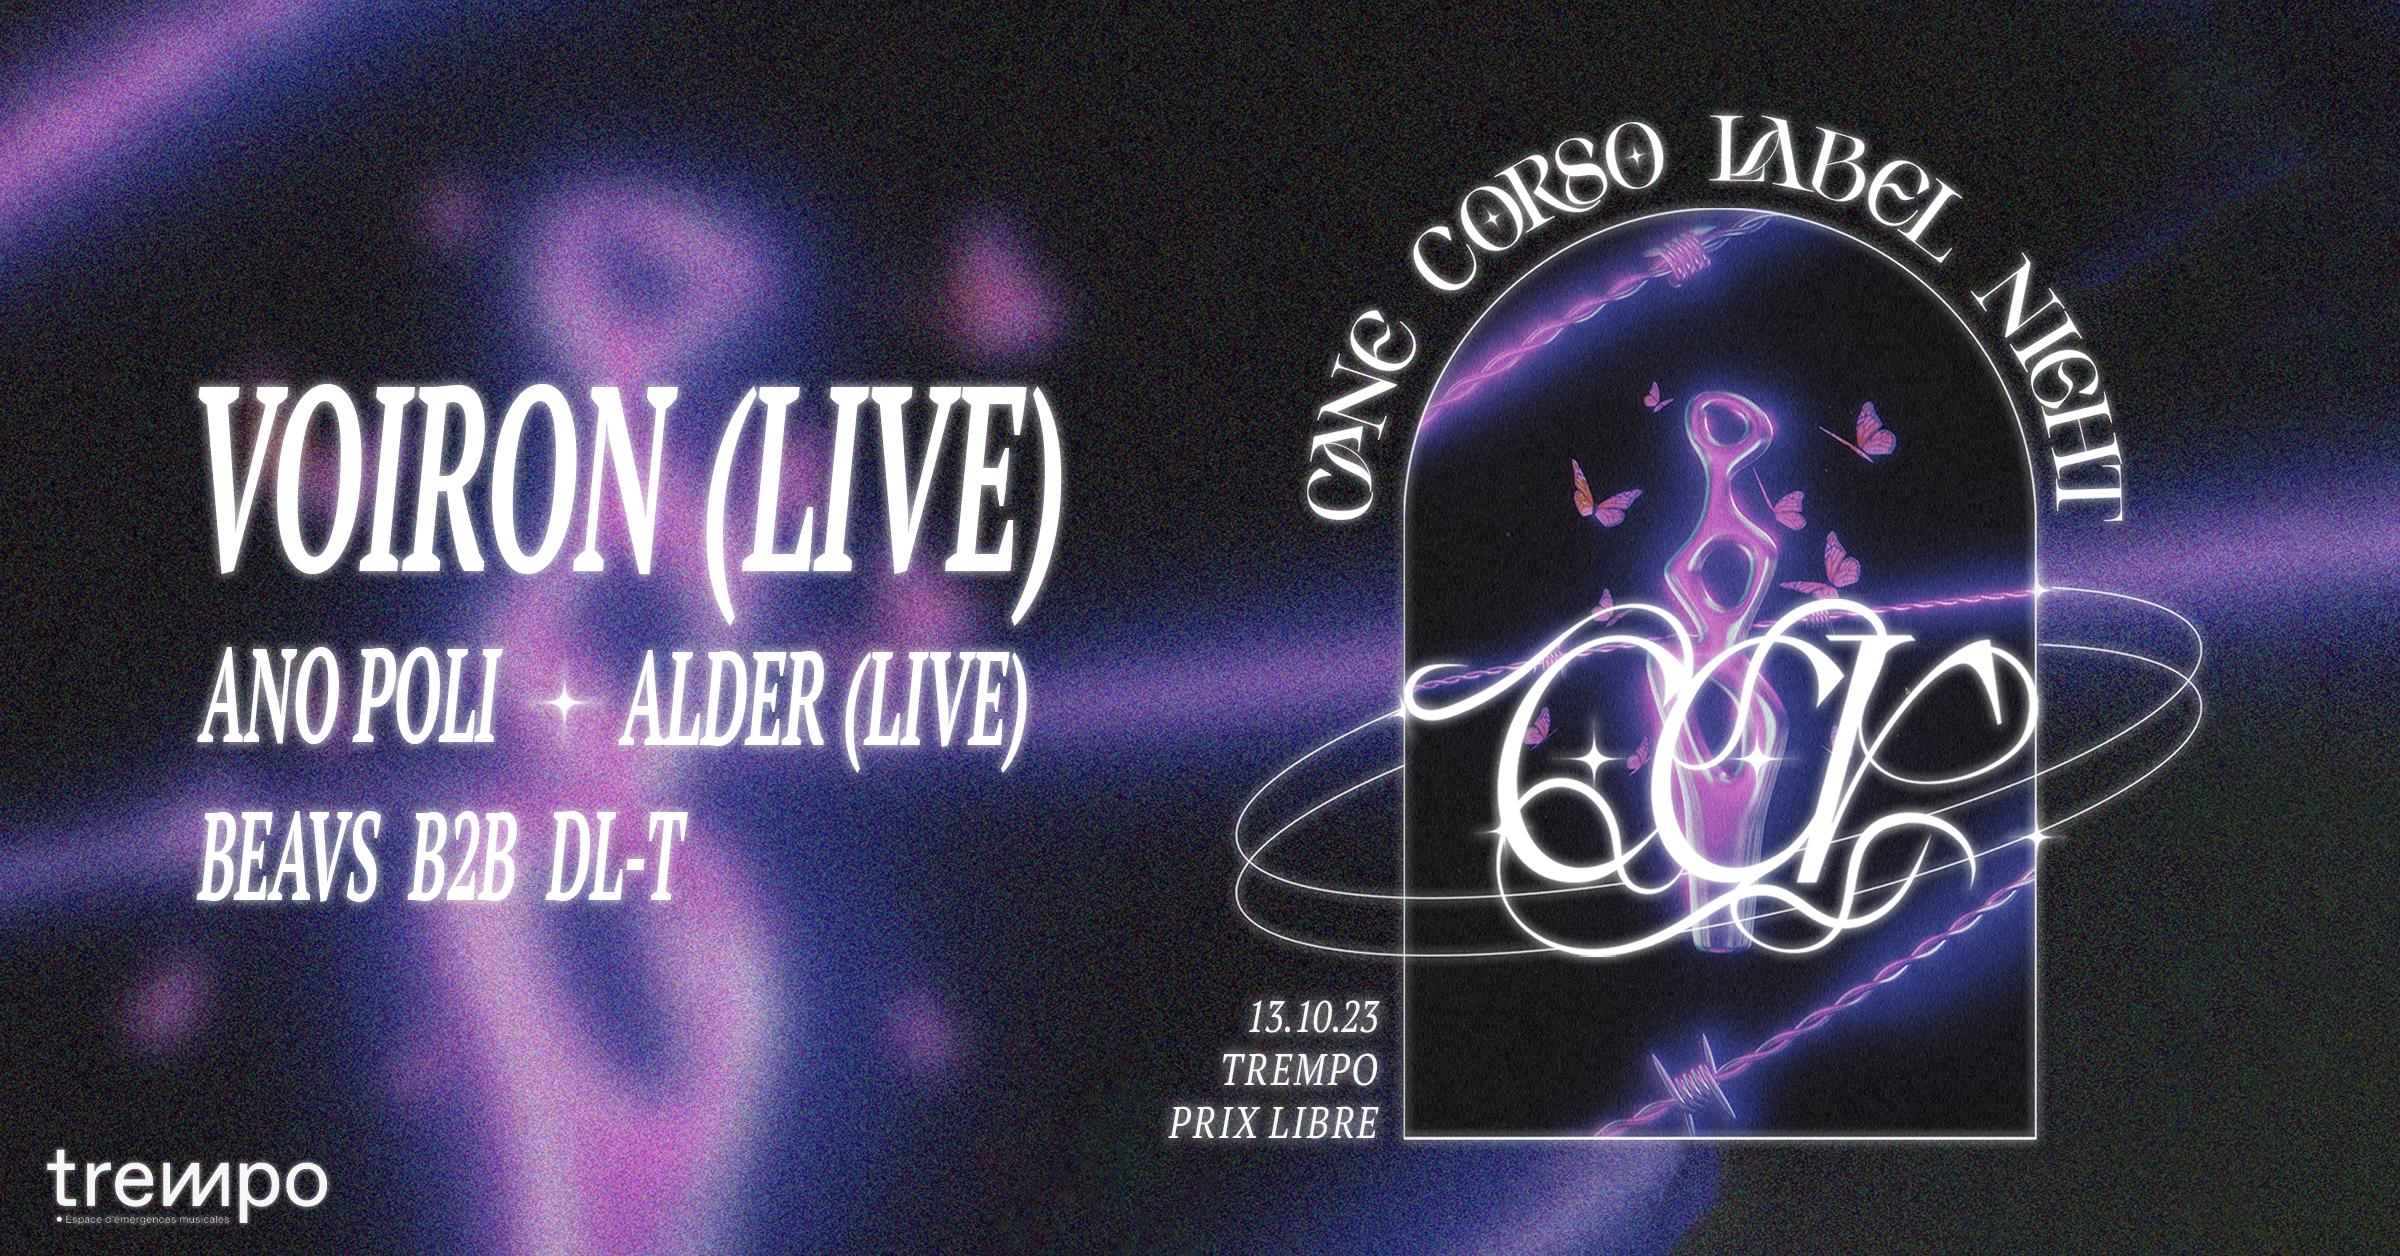 Voiron (live) + Alder (live) + Ano Poli & résidents